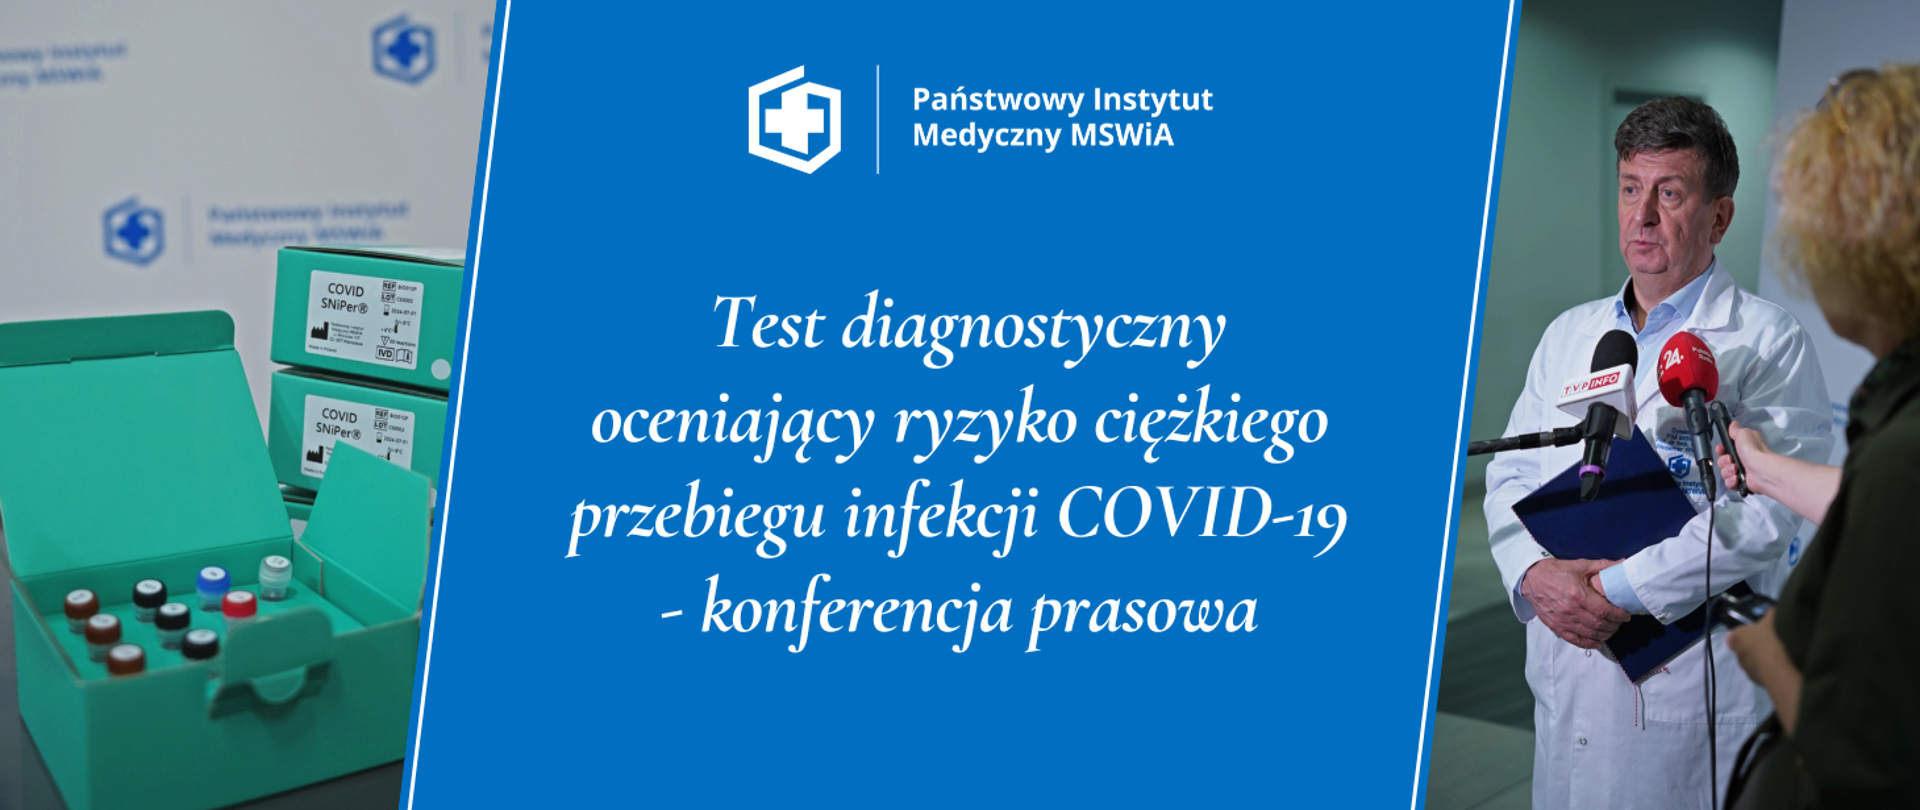 Test diagnostyczny oceniający ryzyko ciężkiego przebiegu infekcji COVID-19 - konferencja prasowa